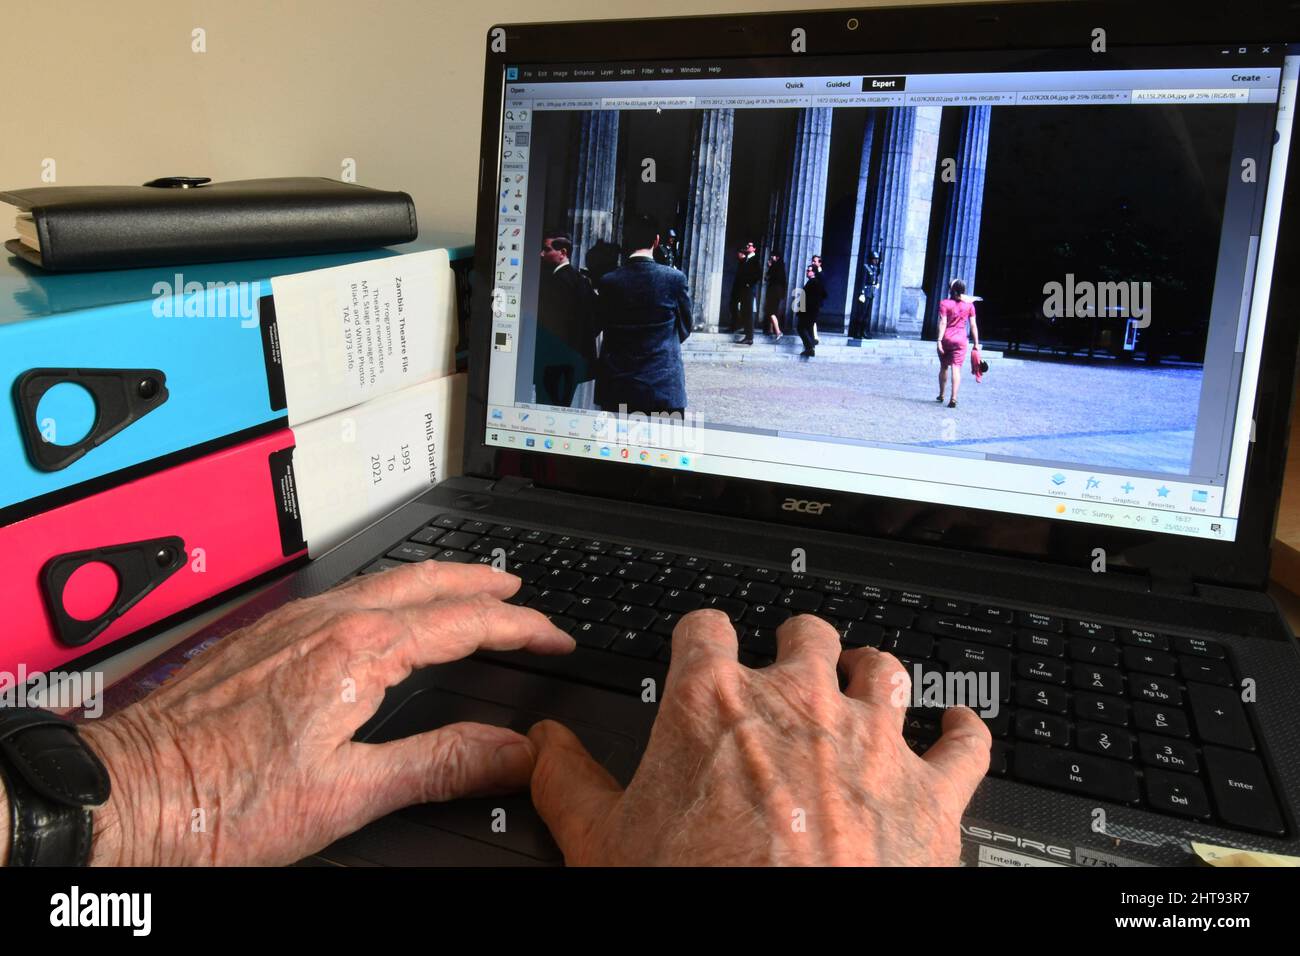 Alte Hände an einer Computertastatur, die Bilder finden, um angenehme Erinnerungen auszulösen, wenn man älter wird.Besuch der Neuen Wache ein Denkmal für die Opfer von FAS Stockfoto